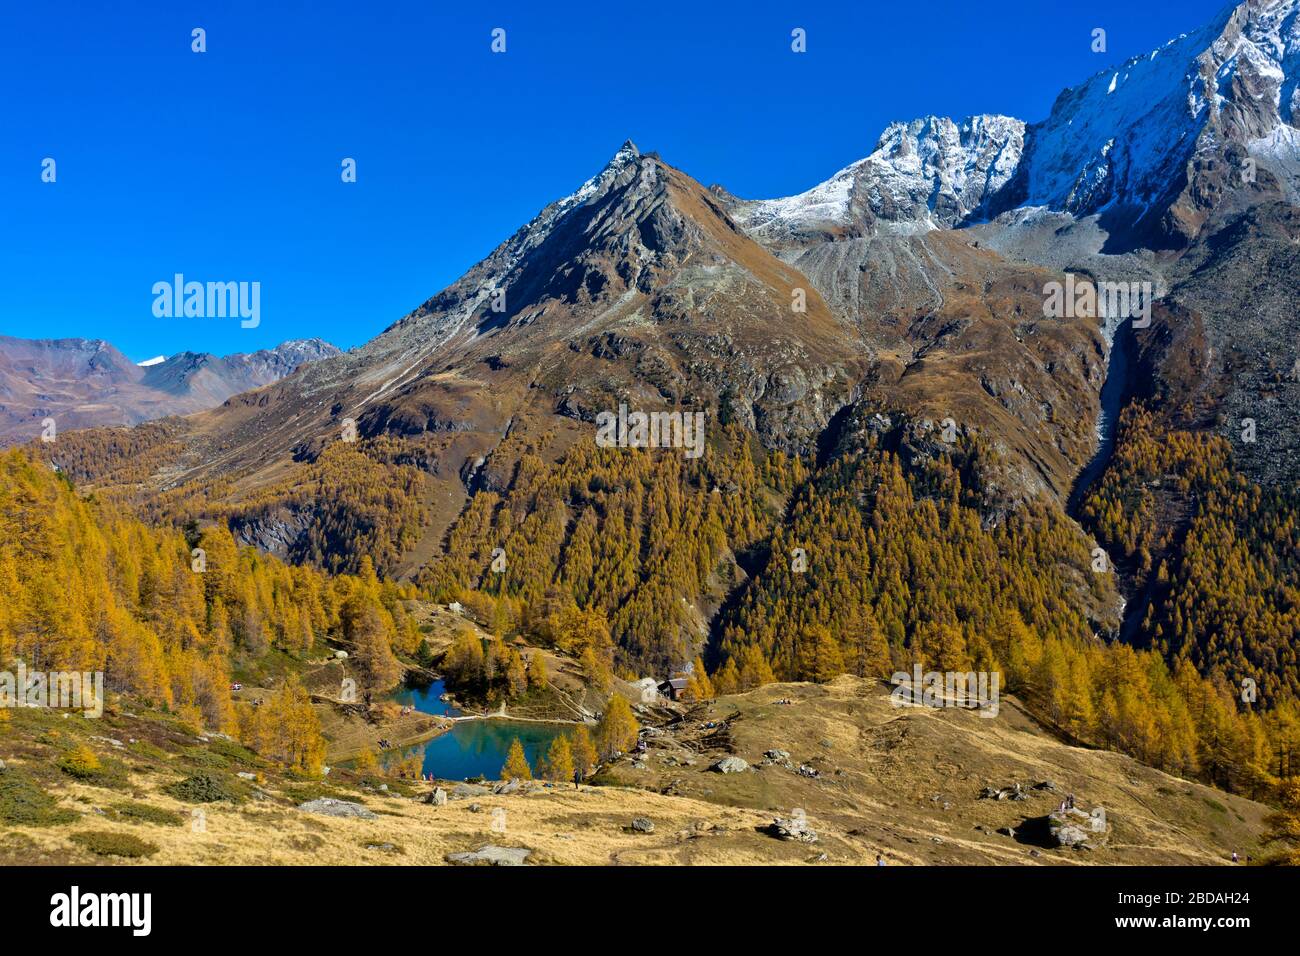 Lac de montagne Lac Bleu de Louche au milieu d'une forêt de mélèze aux couleurs vives de l'automne, Val d'Herens, Eringertal, Valais, Suisse Banque D'Images